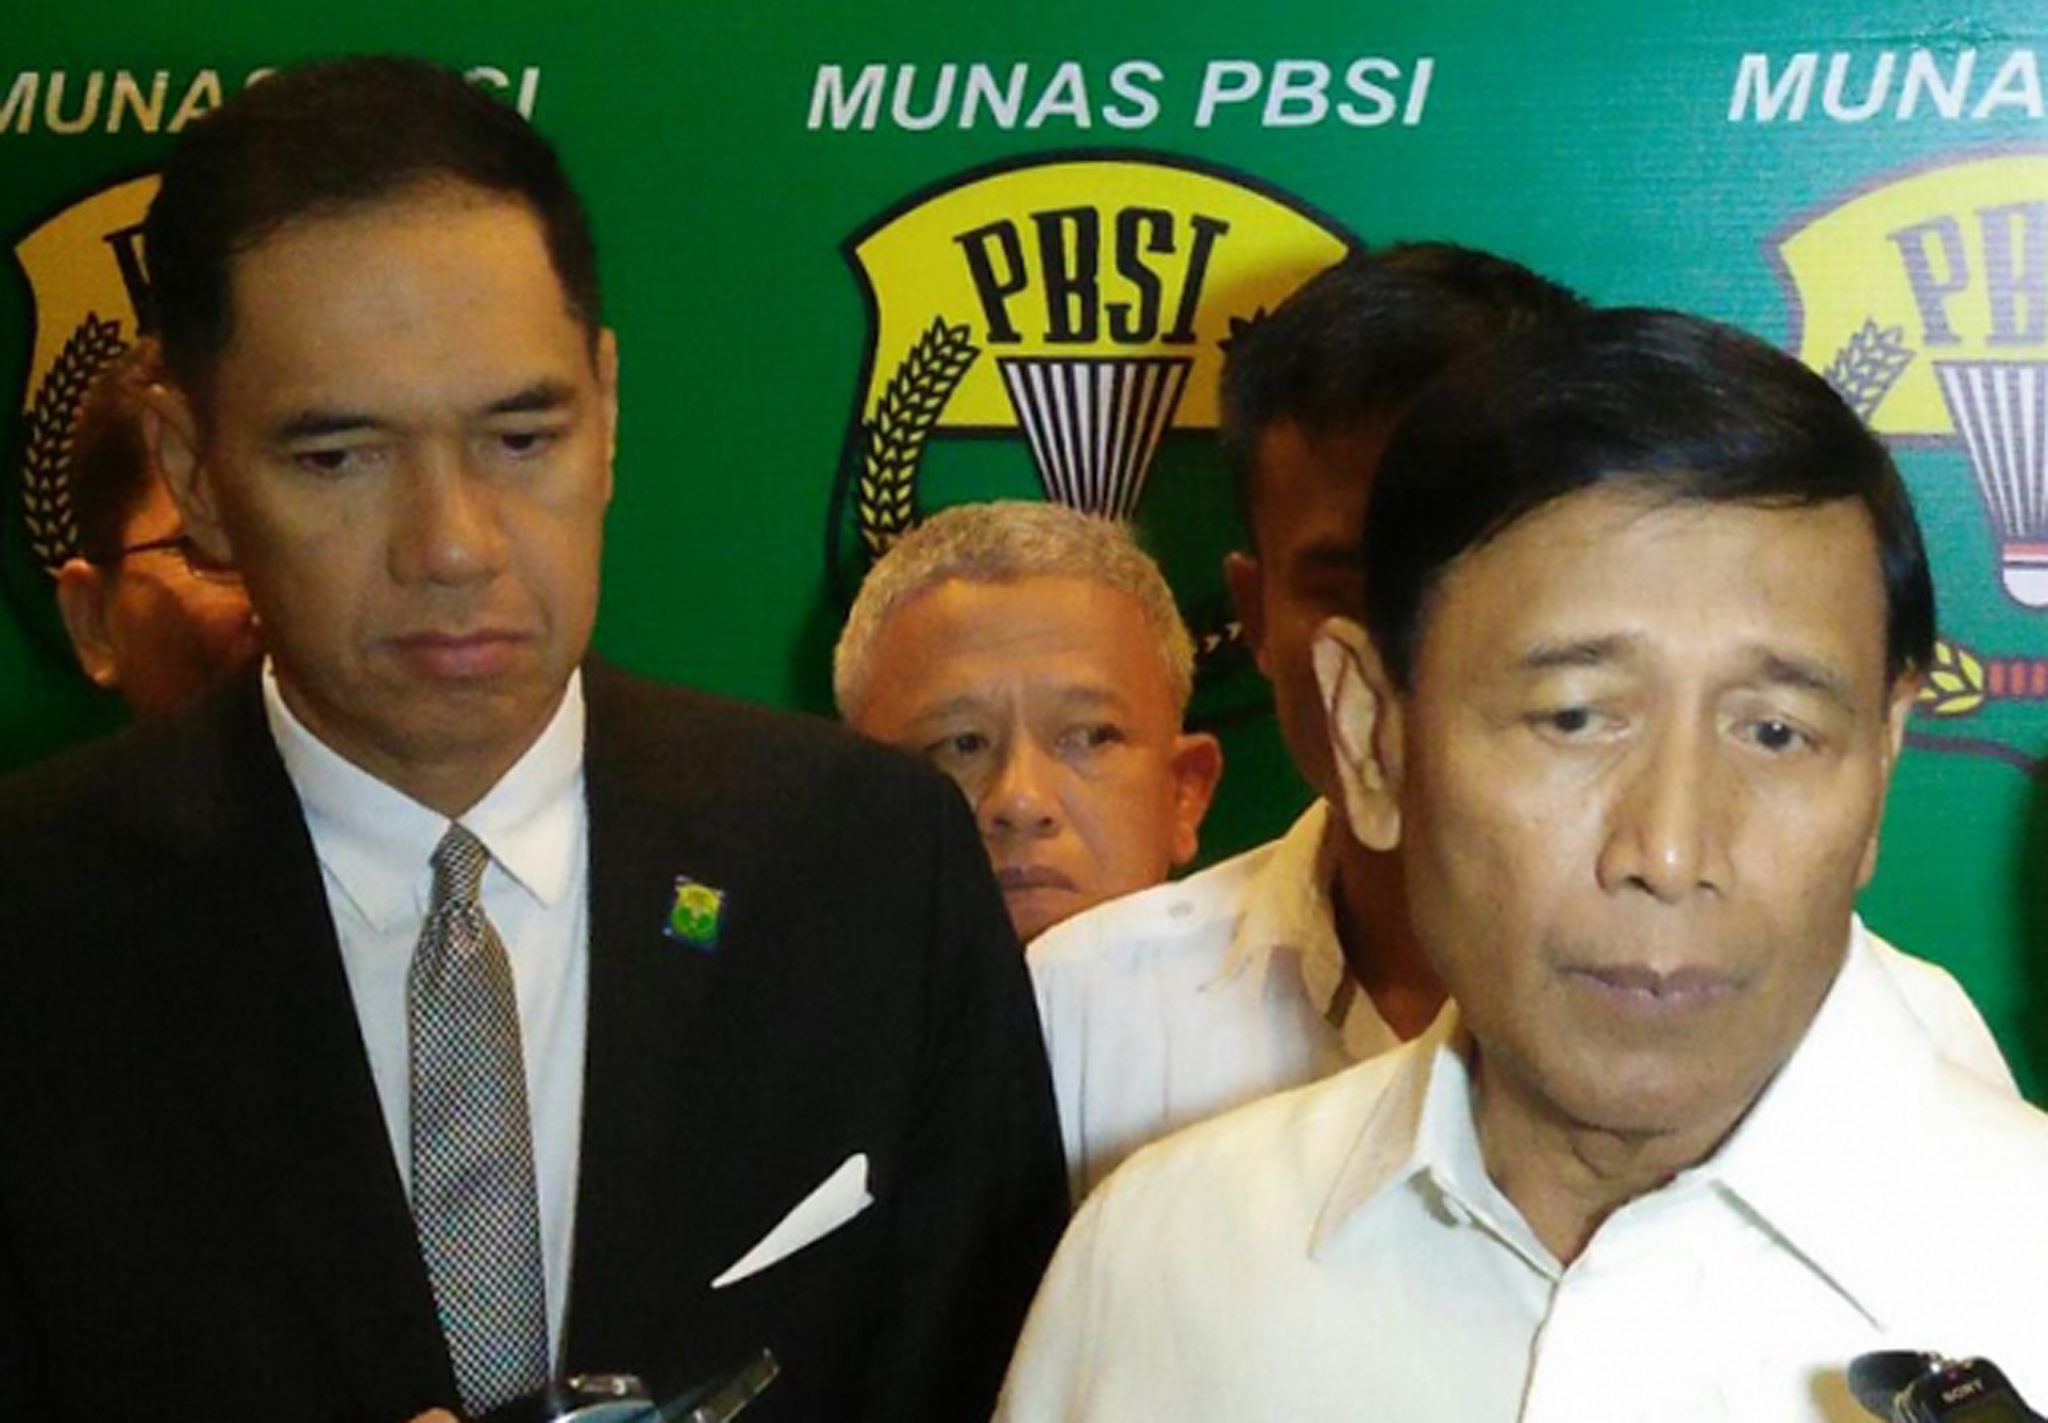 Gita Wirjawan mundur, Wiranto melenggang jadi Ketua Umum PBSI